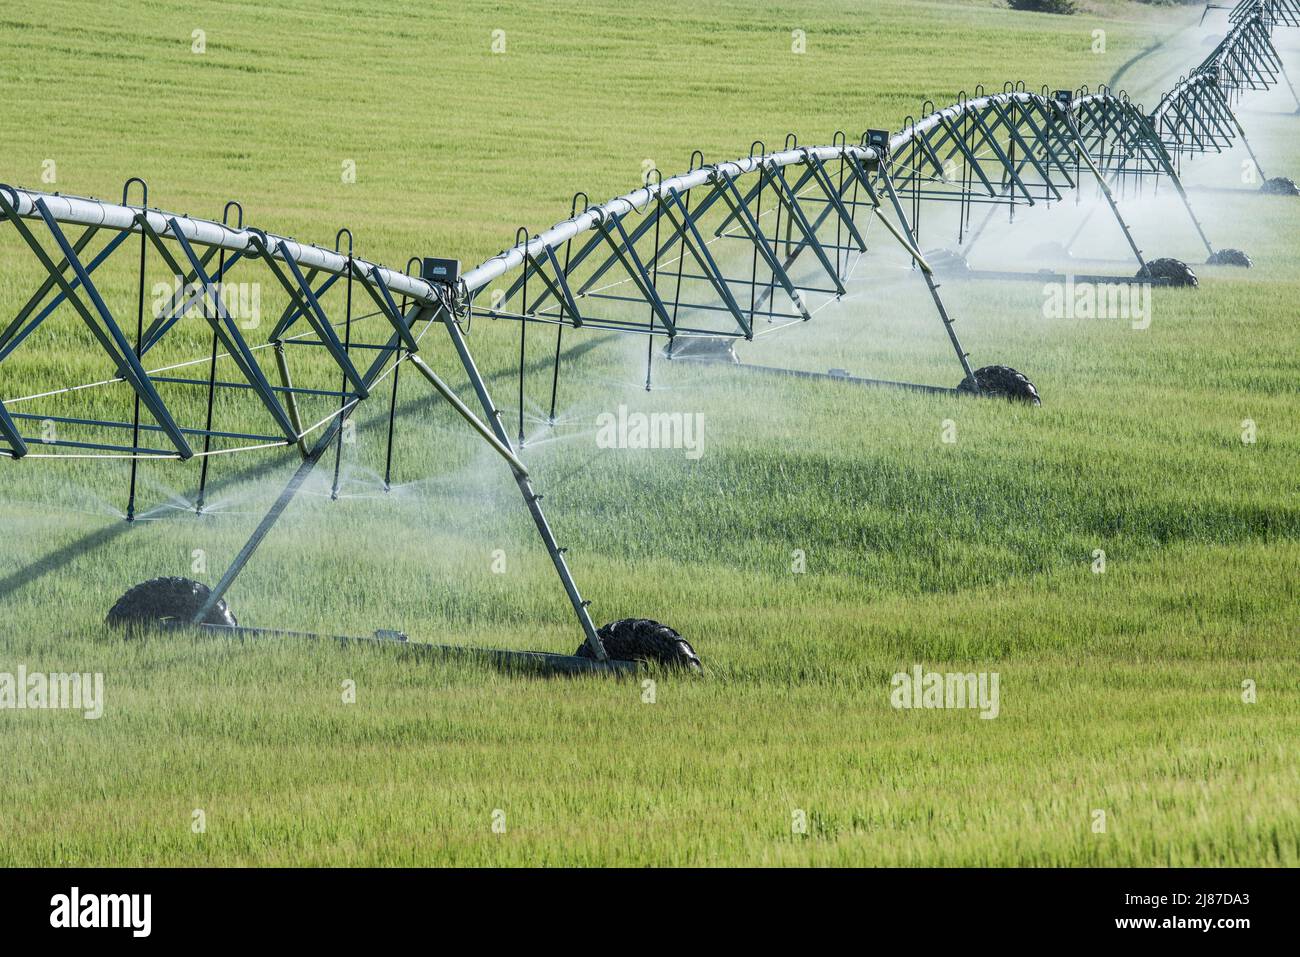 Les champs sont irrigués par des pivots de cercle, fournissant de l'eau aux cultures de Deer Parks WMU, Menan, Idaho, États-Unis Banque D'Images